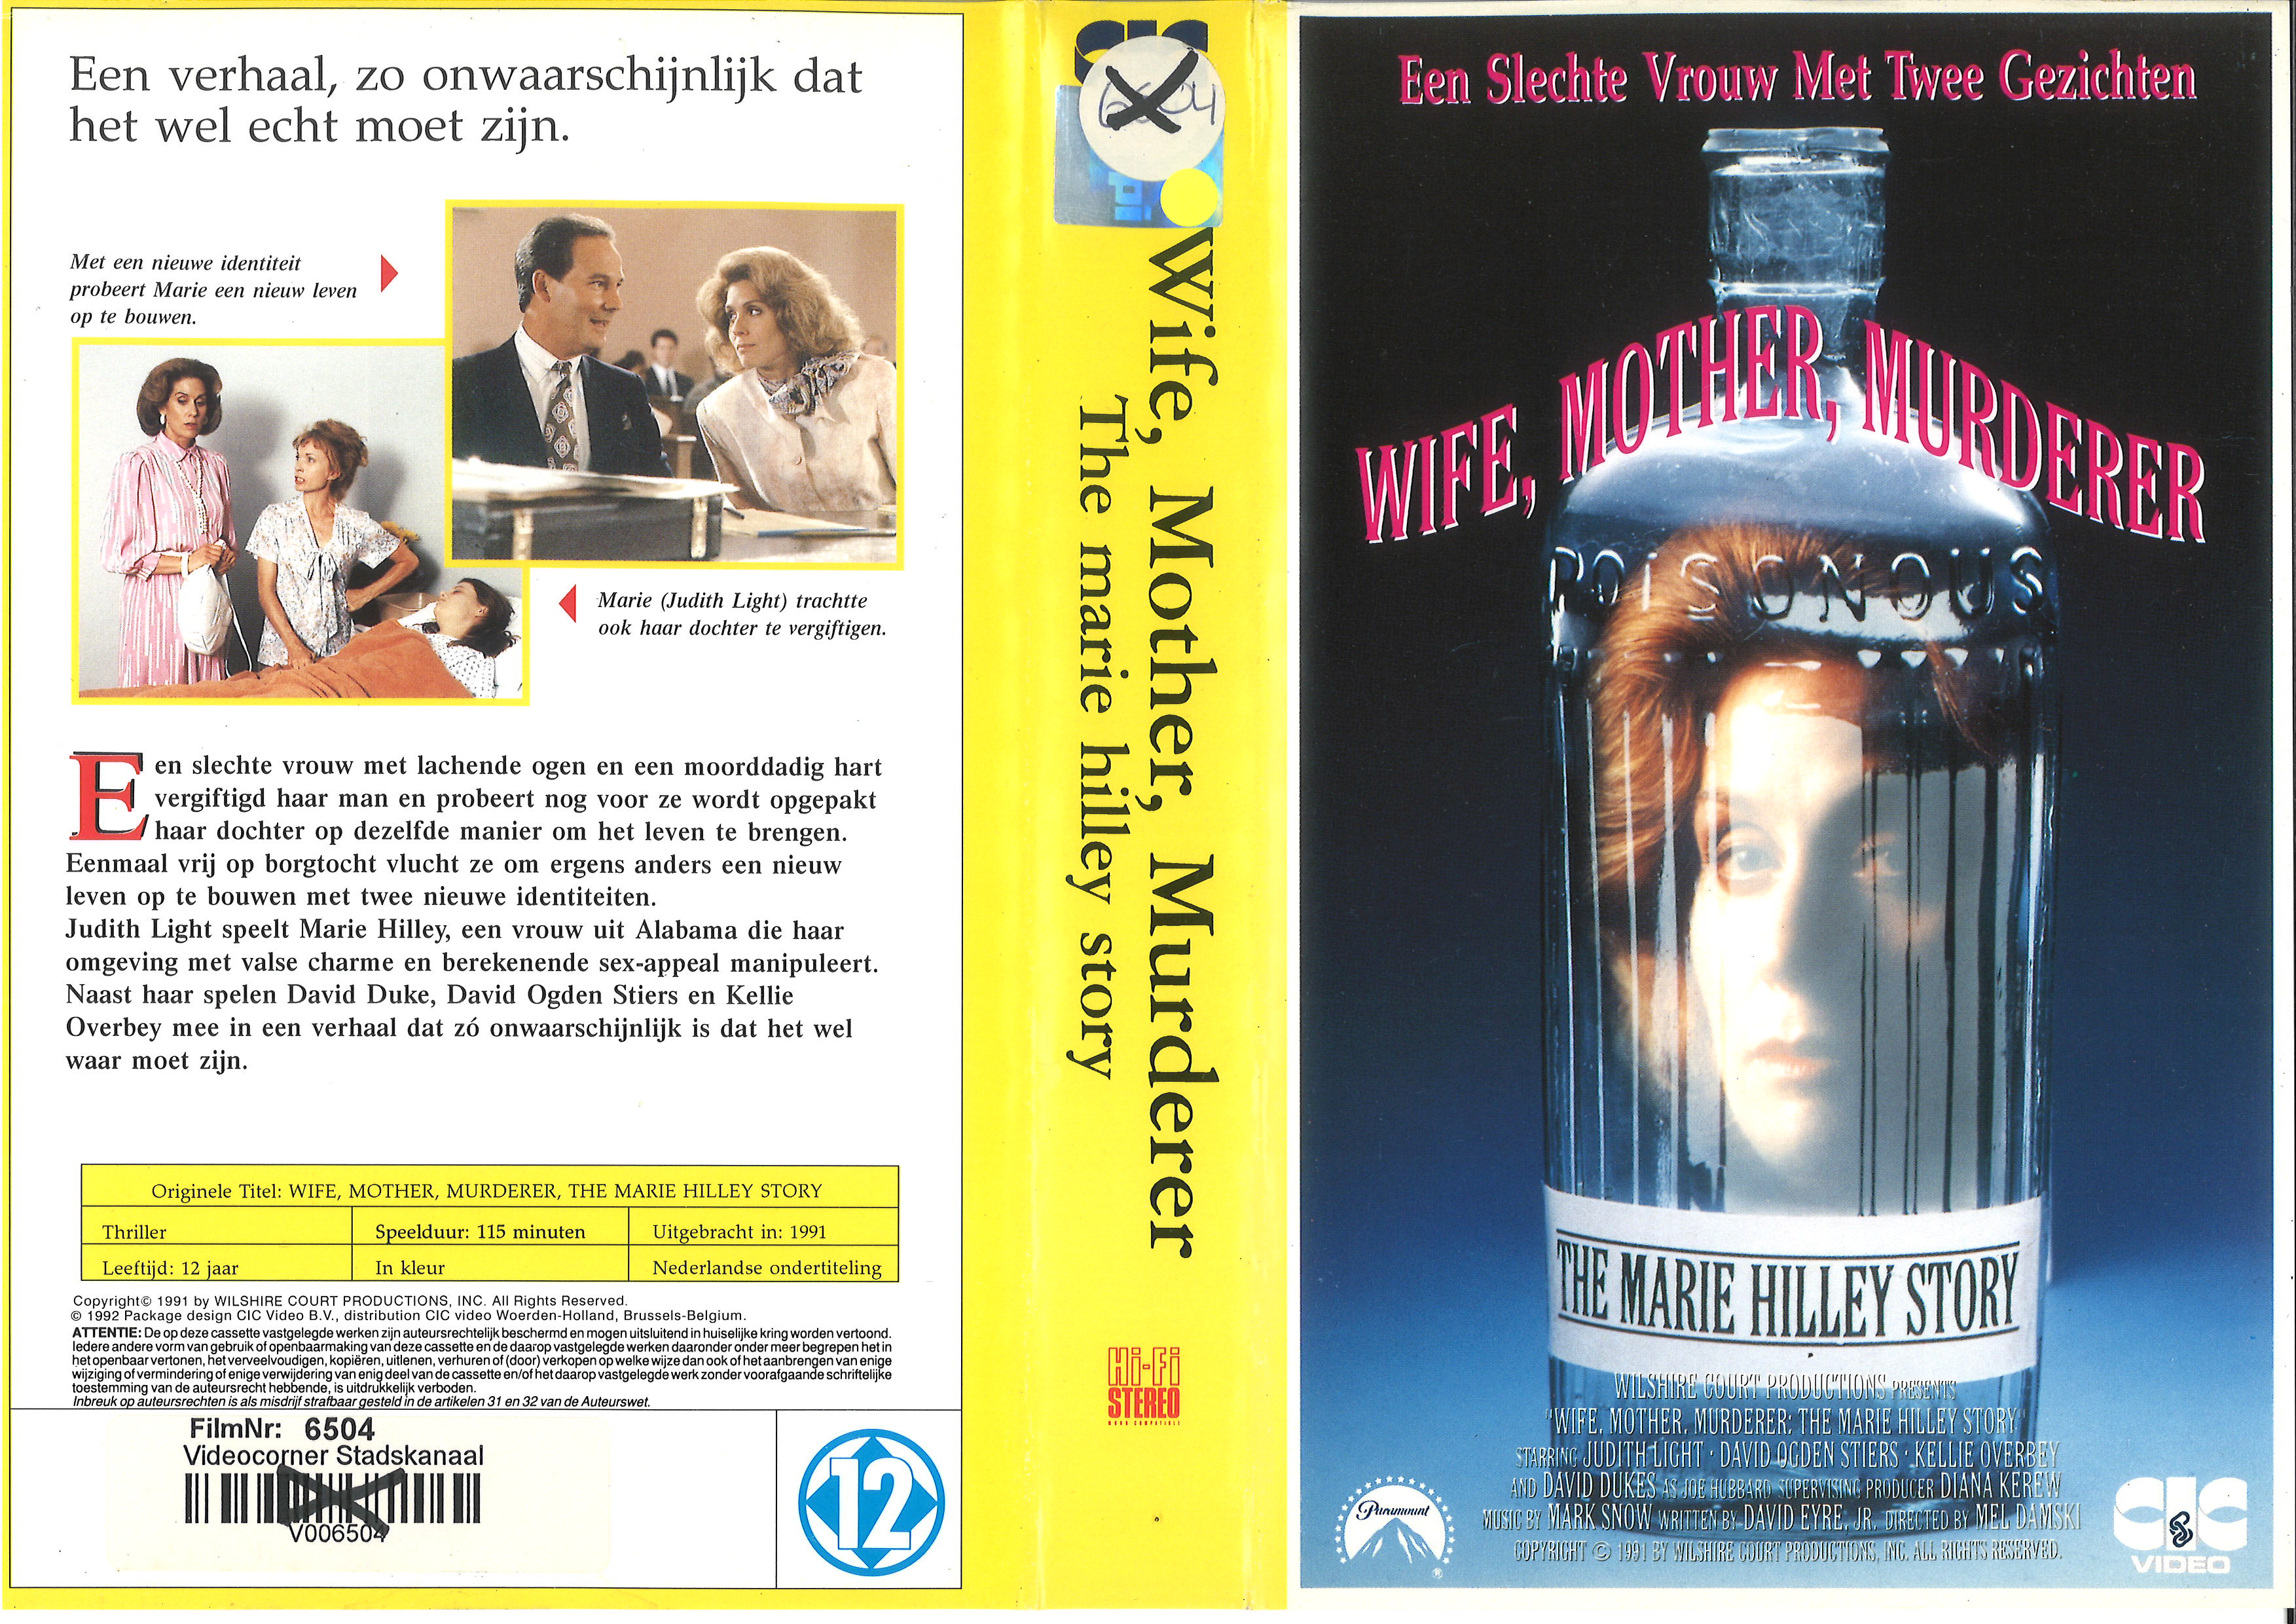 Wife, Mother, Murderer (1991) Screenshot 2 